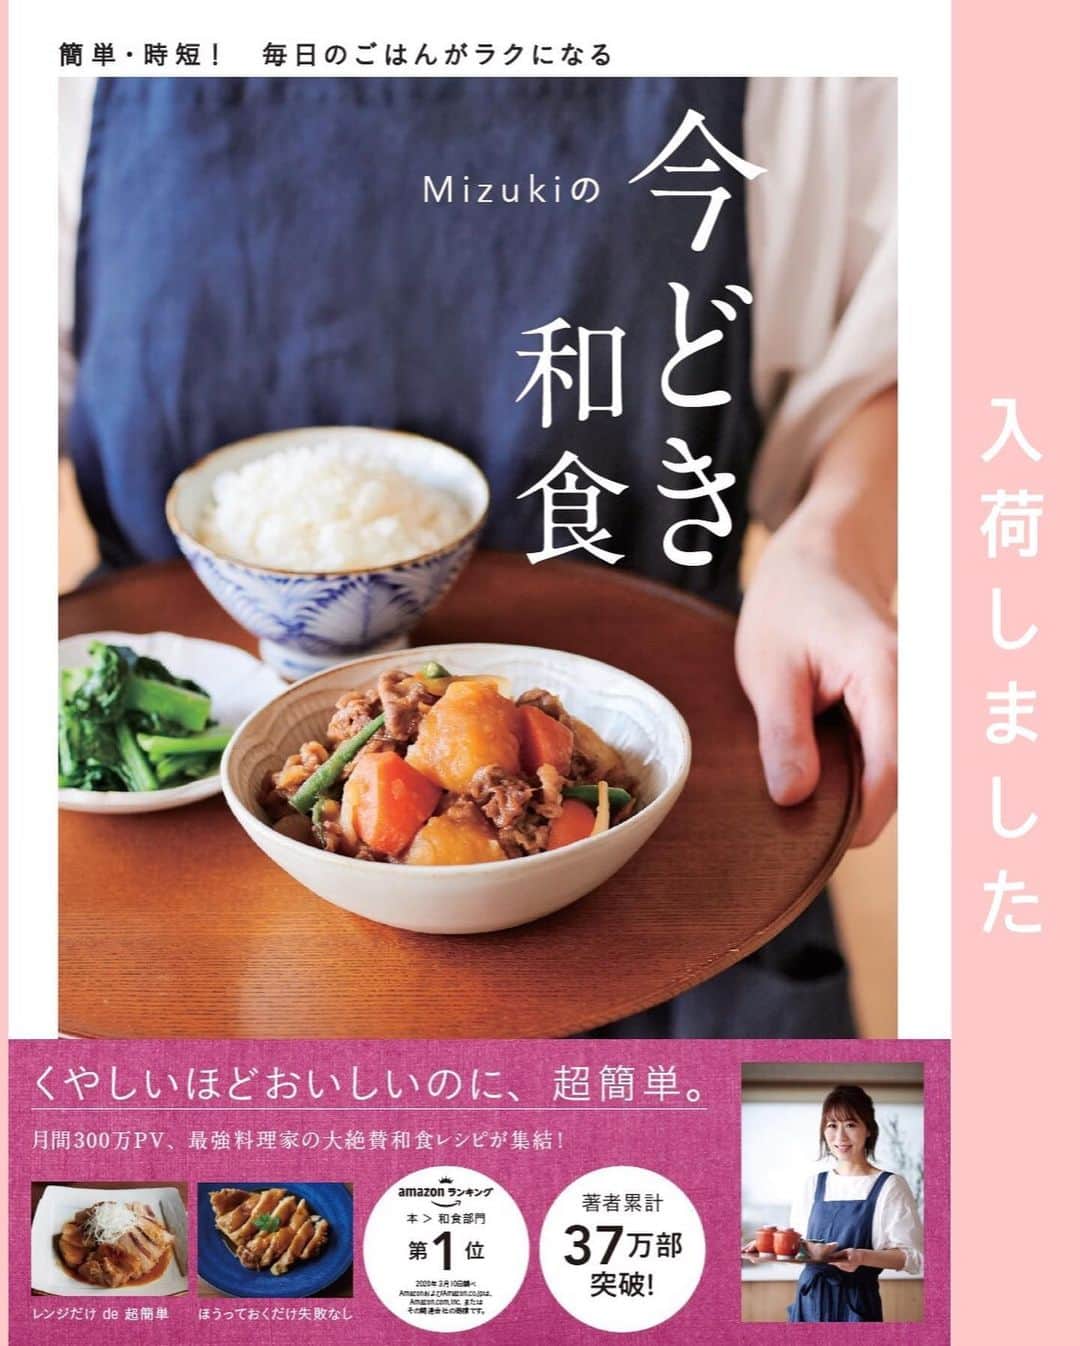 Mizuki【料理ブロガー・簡単レシピ】さんのインスタグラム写真 - (Mizuki【料理ブロガー・簡単レシピ】Instagram)「・﻿ 【レシピ】ーーーーーーーーーーーーーーー﻿ ♡ホケミ&サラダ油で♡﻿ 冷やして美味しいパウンドケーキ(バナナ)﻿ ーーーーーーーーーーーーーーーーーーーー﻿ ﻿ ﻿ ﻿ おはようございます(*^^*)﻿ ﻿ 今日ご紹介させていただくのは﻿ ホットケーキミックスで作る﻿ 冷やして美味しいパウンドケーキ♡﻿ ﻿ 暑くなるこれからの時期﻿ 焼き菓子の保存は冷蔵庫が安心！﻿ ただ、冷やすとパサついたり﻿ かたくなるのが嫌だな〜っと思い﻿ 冷やしても美味しい配合を考えました♩﻿ ﻿ 通常よりお砂糖は少し多めに、﻿ バナナもたっぷり混ぜ込みます♡﻿ そして、バターではなく﻿ オイルで作るのもポイントです♩﻿ ﻿ と〜っても簡単にできるので﻿ よかったらお試し下さいね(*´艸`)﻿ ﻿ ﻿ ﻿ ーーーーーーーーーーーーーーーーーーーー﻿ 【18cmパウンド型】﻿ バナナ...小2本(皮付き200g)﻿ 卵...2個﻿ 砂糖...大3﻿ サラダ油...60g﻿ (あれば)シナモンかラム酒...適量﻿ ホットケーキミックス...150g﻿ ﻿ (準備)型にシートを敷く。オーブンを180度に予熱する。﻿ 1.ボウルにバナナを入れ、フォークでペースト状に潰す。卵、砂糖、サラダ油、(あれば)シナモン少々orラム酒小2〜を加えてよく混ぜ、最後にホットケーキミックスも加えて混ぜる。﻿ 2.型に注ぎ、予熱したオーブンで35〜40分焼く。焼けたらアミにのせて冷まし、ラップで包んで冷蔵庫で冷やす。﻿ ーーーーーーーーーーーーーーーーーーーー﻿ ﻿ ﻿ ﻿ 《ポイント》﻿ ♦︎シナモンやラム酒はなくても大丈夫ですがあれば香りがよくなります♩﻿ ♦︎サラダ油の代わりに太白ごま油を使用しても♩﻿ ♦︎冷蔵庫保存で2〜3日を目処に食べ切って下さい♩﻿ ﻿ ﻿ ﻿ ﻿ ﻿ ﻿ ＿＿＿＿＿＿＿＿＿＿＿＿＿＿＿＿＿﻿ 【💎インスタライブのお知らせ💎】﻿ 14日(日曜日)の14時頃から﻿ インスタライブを行います✨﻿ 詳細はまたお知らせさせて下さいね♩﻿ ￣￣￣￣￣￣￣￣￣￣￣￣￣￣￣￣￣﻿ ﻿ ﻿ ﻿ ﻿ ﻿ ﻿ 🔻入荷しました🔻﻿ ストーリーにリンク貼っています🙇‍♀️﻿ ＿＿＿＿＿＿＿＿＿＿＿＿＿＿＿＿＿＿＿﻿ 📕\ \ 新刊発売中 / /📕﻿ 簡単・時短！ 毎日のごはんがラクになる﻿ ✨🦋 【 #Mizukiの今どき和食 】🦋✨﻿ ＿＿＿＿＿＿＿＿＿＿＿＿＿＿＿＿＿＿＿﻿ ﻿ なるべく少ない材料で﻿ 手間も時間も省きながら﻿ 簡単にできるおいしい和食レシピ♩﻿ 簡単に失敗なくマスターできる一冊で﻿ もっと気軽に、カジュアルに﻿ 和食を楽しんで下さいね(*^^*)﻿ ﻿ ﻿ ーーー ⭐️PART.1 メインおかず ⭐️ーーー﻿ 素材別にレシピをご紹介しています♩﻿ 和食の定番から新定番まで﻿ どれも押さえておきたいメニューばかり。﻿ 肉じゃがはフライパンで！焼き豚はレンジで！﻿ ぶり大根は切り身を使って手軽に作ります♩﻿ ﻿ ーーー ☘️PART.2 サブおかず ☘️ーーー﻿ 年中手に入るお手頃野菜と﻿ 乾物や大豆、こんにゃくなどを使った﻿ 副菜レシピをたっぷり掲載！！﻿ 普段SNSではメインおかずばかりなので﻿ 本では副菜にも力を入れています(*^^*)﻿ ﻿ ーーー 🌸PART.3 ごはんと汁物 🌸ーーー﻿ ささっと作れる丼と麺、﻿ みんなで食べたいいなり寿司や﻿ 手巻きごはんもご紹介！﻿ 複数の炊き込みごはんと﻿ 味噌汁&和風スープも盛りだくさん！﻿ ﻿ ﻿ 各レシピのポイントは﻿ 【写真付きで丁寧に解説】﻿ 副菜レシピもたっぷりなので﻿ 【メインページに副菜メモもつけました】﻿ ＊このメインにはこの副菜が合いますよ〜﻿ という献立の提案です(*^^*)﻿ 【その他コラムも充実】﻿ 全127品中ほぼ全て﻿ 【本だけのレシピです！】﻿ ＿＿＿＿＿＿＿＿＿＿＿＿＿＿＿＿＿＿＿﻿ ﻿ ﻿ ﻿ ﻿ ﻿ ＿＿＿＿＿＿＿＿＿＿＿＿＿＿＿＿＿﻿ 🎀発売中🎀﻿ 【#ホットケーキミックスのお菓子 】﻿ ﻿ 一冊まるっとホケミスイーツ♩﻿ 普段のおやつから﻿ 特別な日にも使えるレシピを﻿ この一冊に詰め込みました(*^^*)﻿ ホットケーキミックスを使えば﻿ 簡単に本格的なお菓子が作れますよ♡﻿ ＿＿＿＿＿＿＿＿＿＿＿＿＿＿＿＿＿﻿ ﻿ ⭐️ストーリー、ハイライト、プロフ画面に﻿ 本のURLを貼らせていただいております♩﻿ →(@mizuki_31cafe )﻿ ﻿ ﻿ ﻿ ﻿ #ホットケーキミックス#パウンドケーキ#バナナケーキ#うちで過ごそう#おうち時間#Mizuki#簡単レシピ#時短レシピ#節約レシピ#料理#レシピ#フーディーテーブル#マカロニメイト#おうちごはん#デリスタグラマー#料理好きな人と繋がりたい#おうちごはん#lover#foodpic#follow#cooking#recipe#lin_stagrammer#stayhome#冷やして美味しいパウンドケーキm」6月10日 7時03分 - mizuki_31cafe